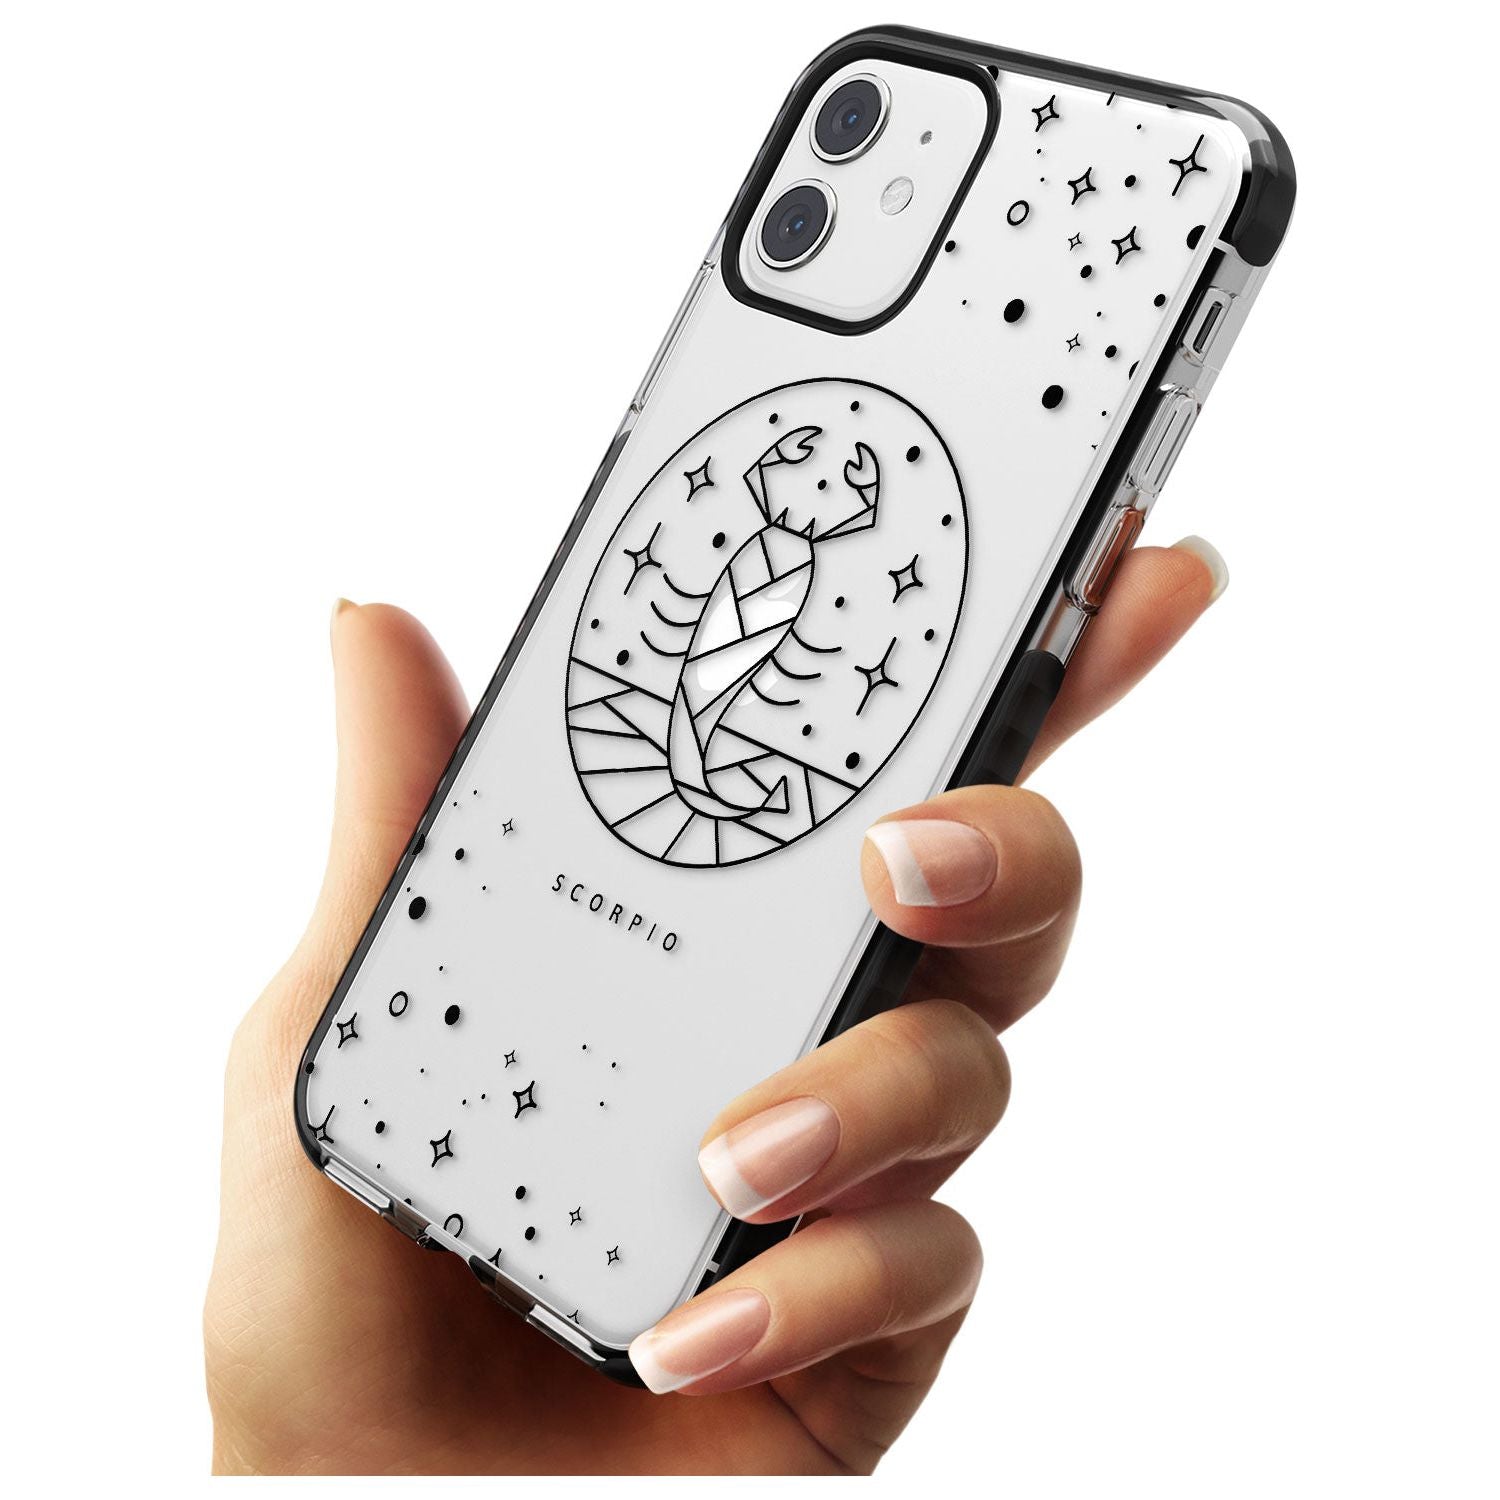 Scorpio Emblem - Transparent Design Black Impact Phone Case for iPhone 11